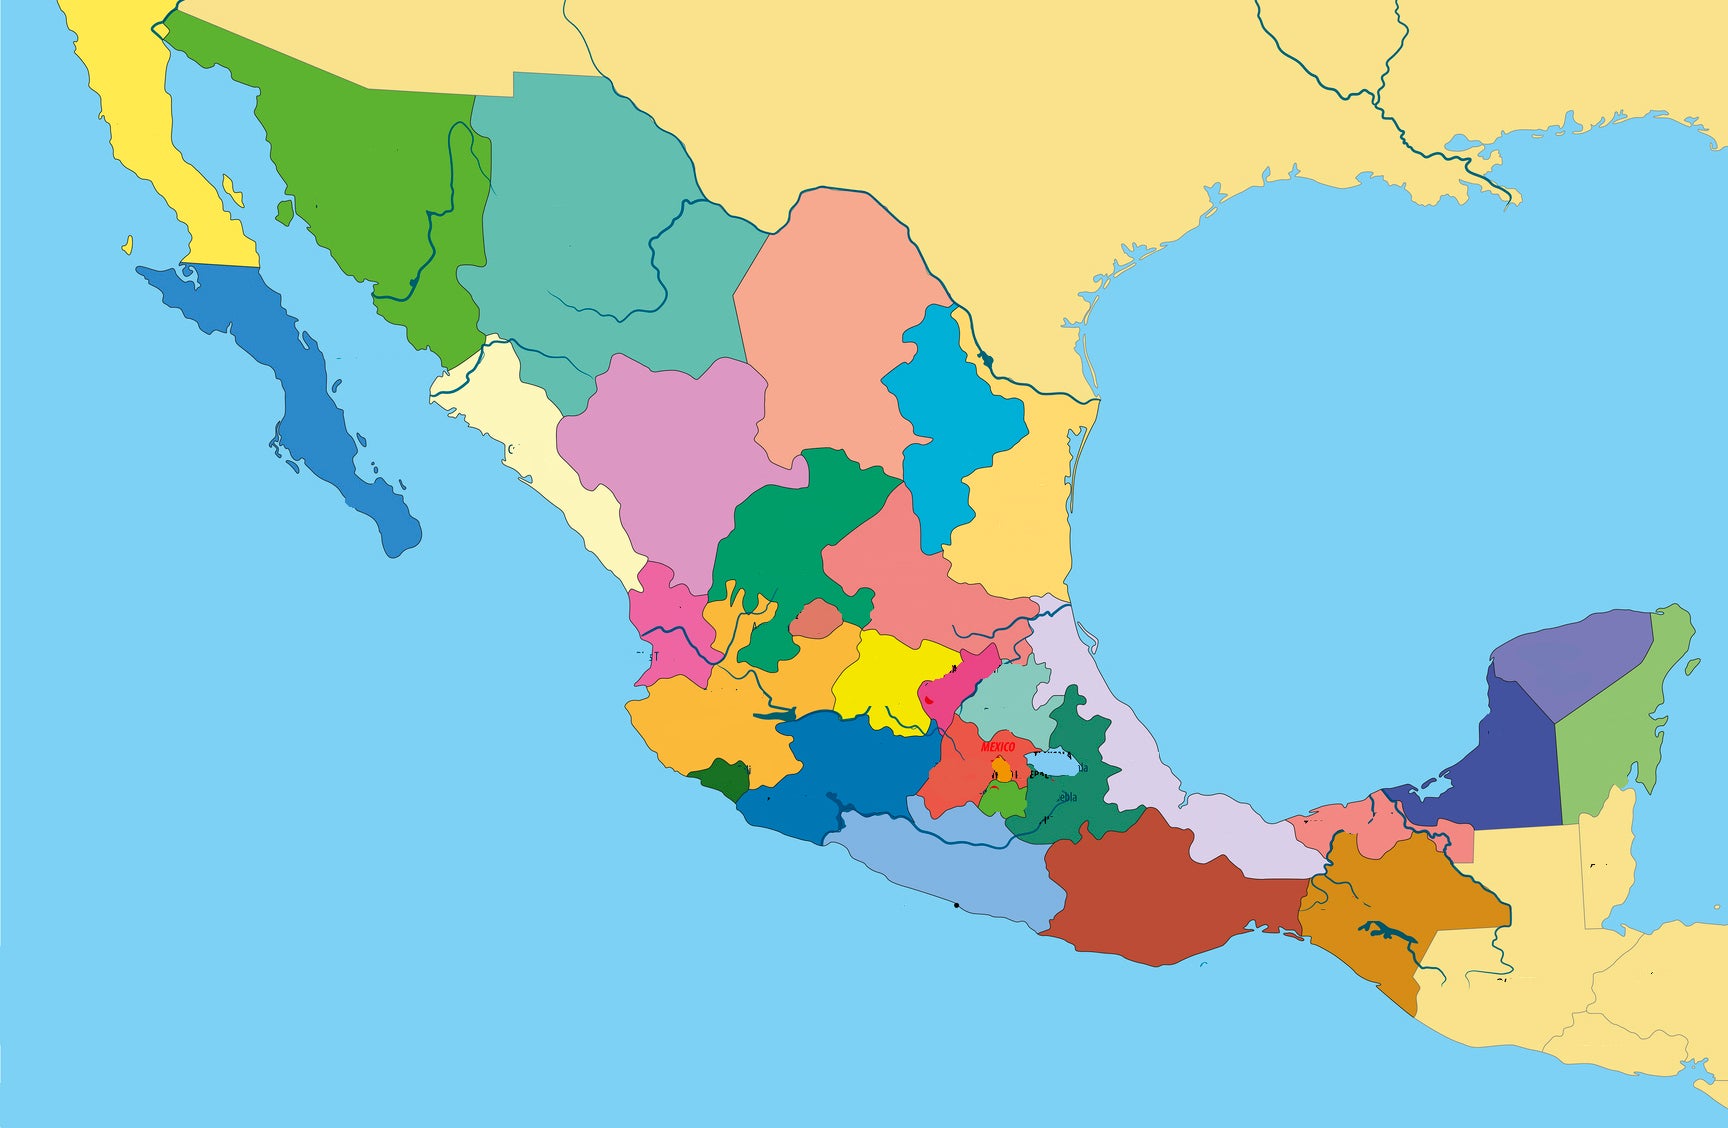 Puedes encontrar 16 estados de México en el mapa?